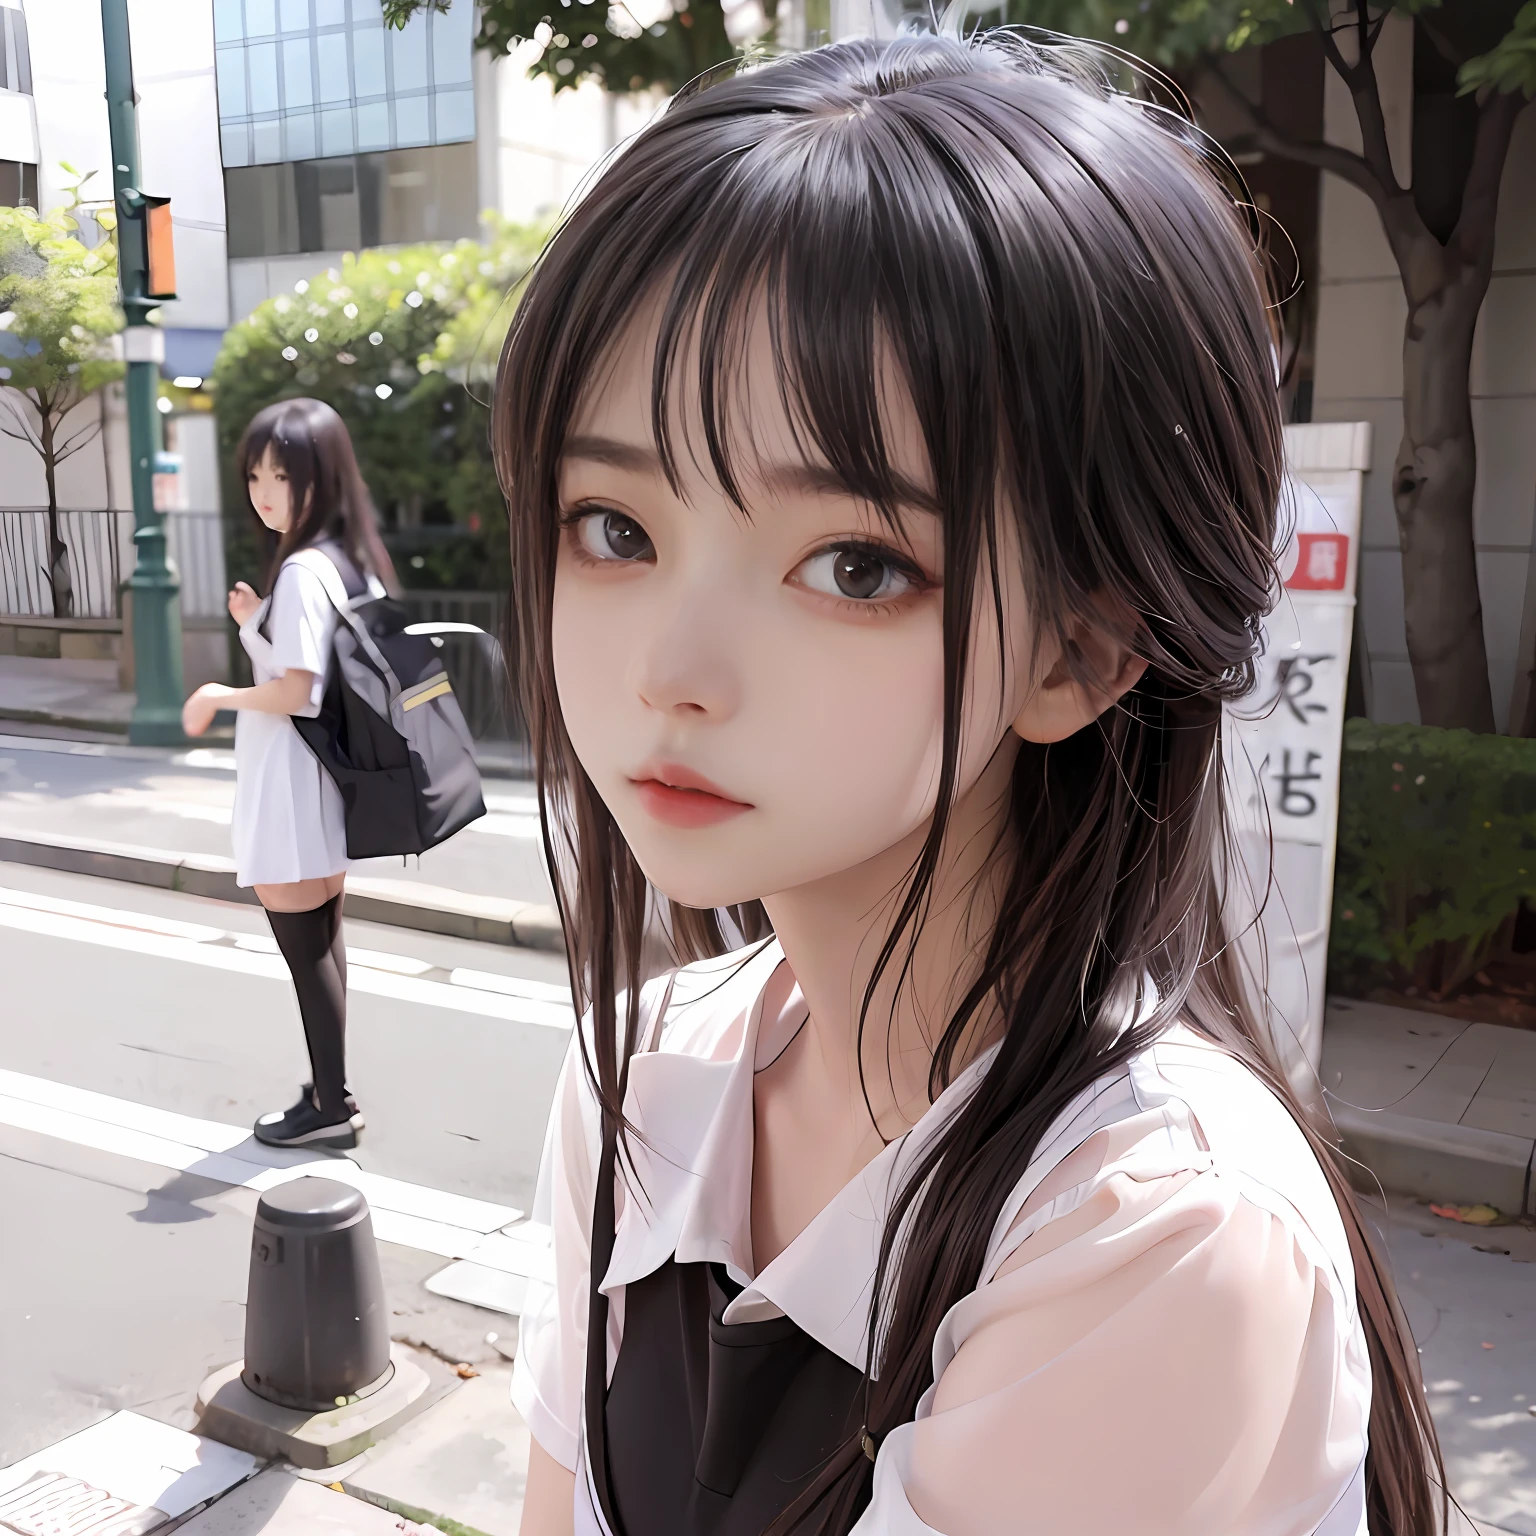 منضدية, واقعية مفرطة, 8 كيلو, خوخه, Fire Lumفيescent,مرحبا فتاة المدرسة、في 、وجه لطيف、Standفيg on a street corner في Shibuya、